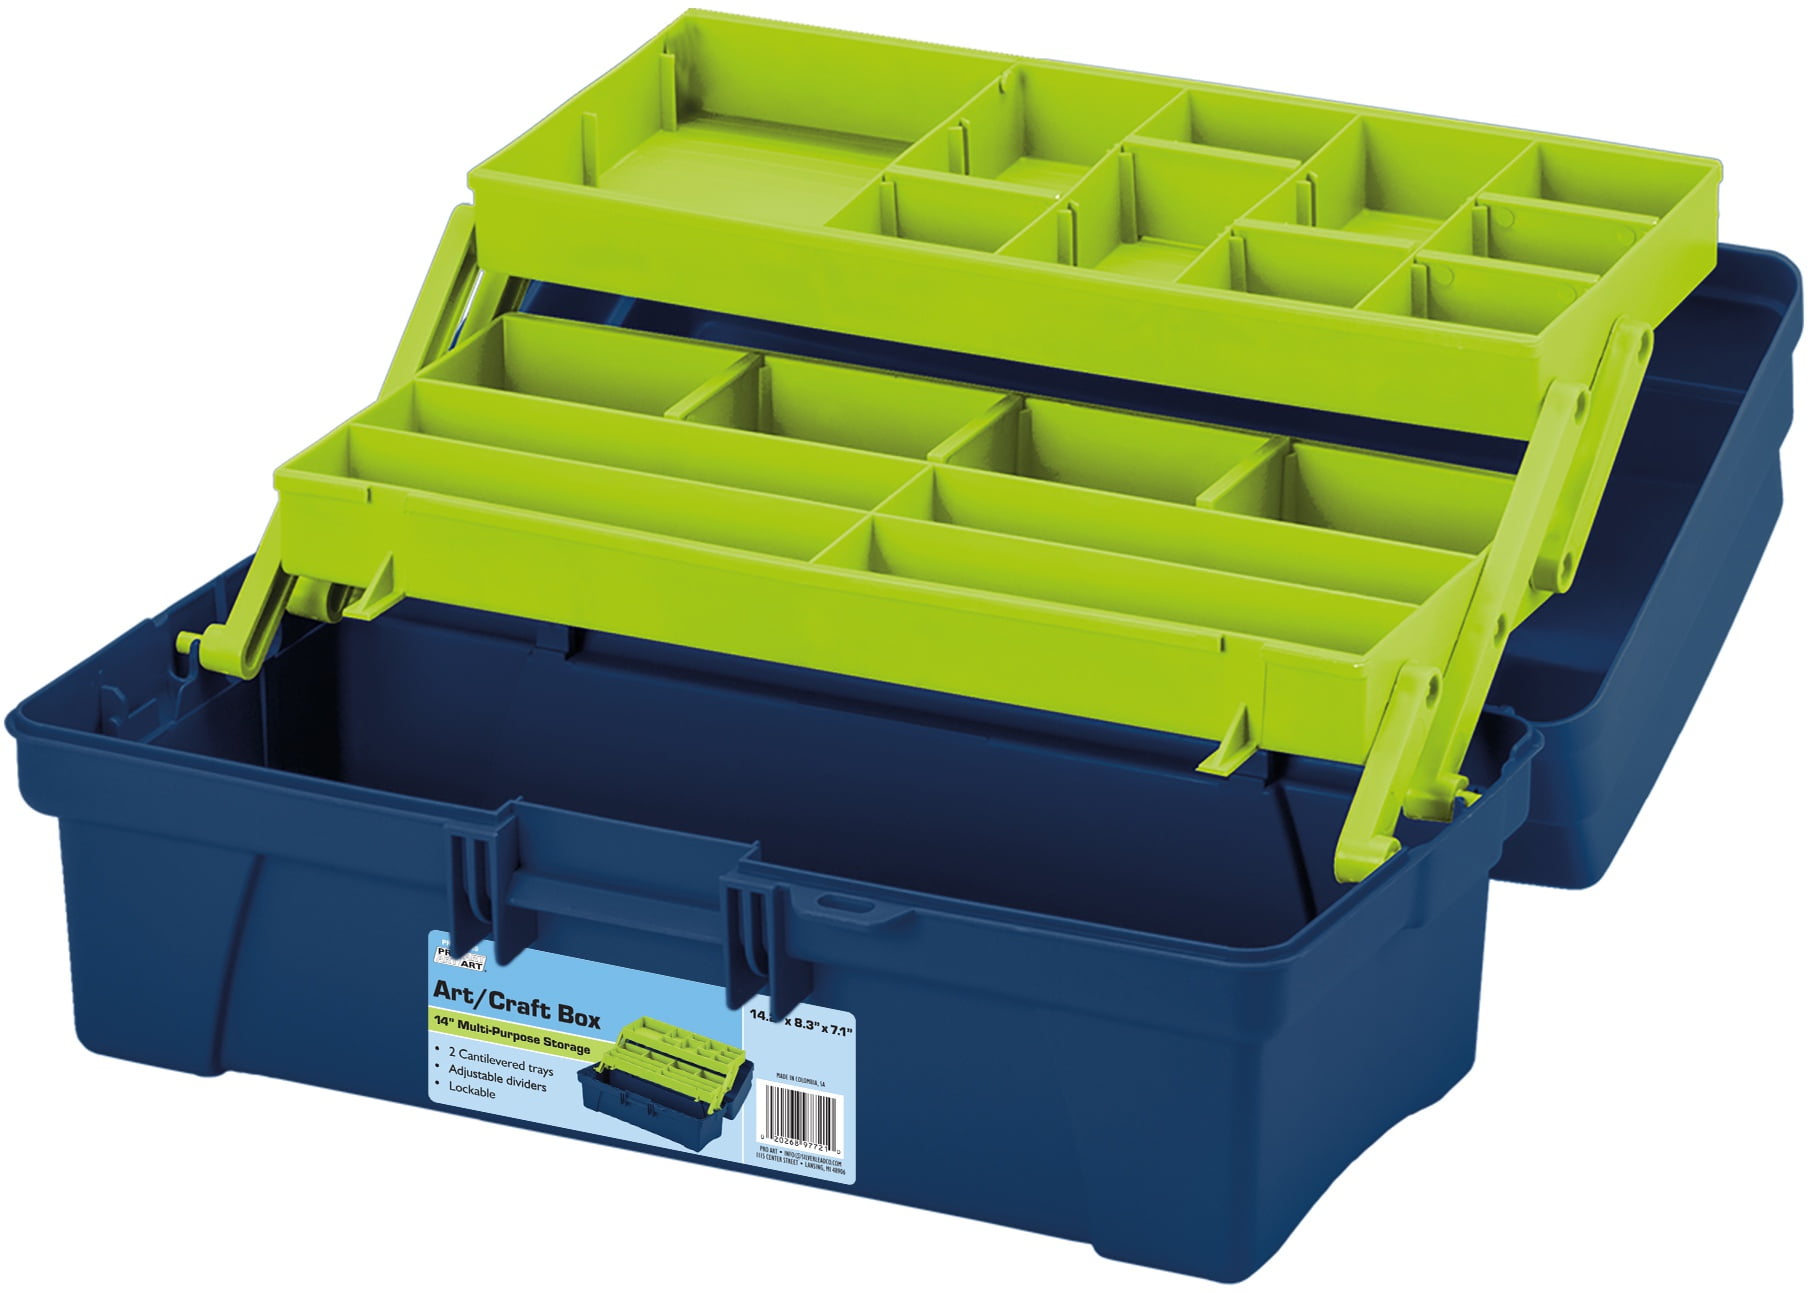 Pro Art Storage Box WInner Tray Blue & Yellow